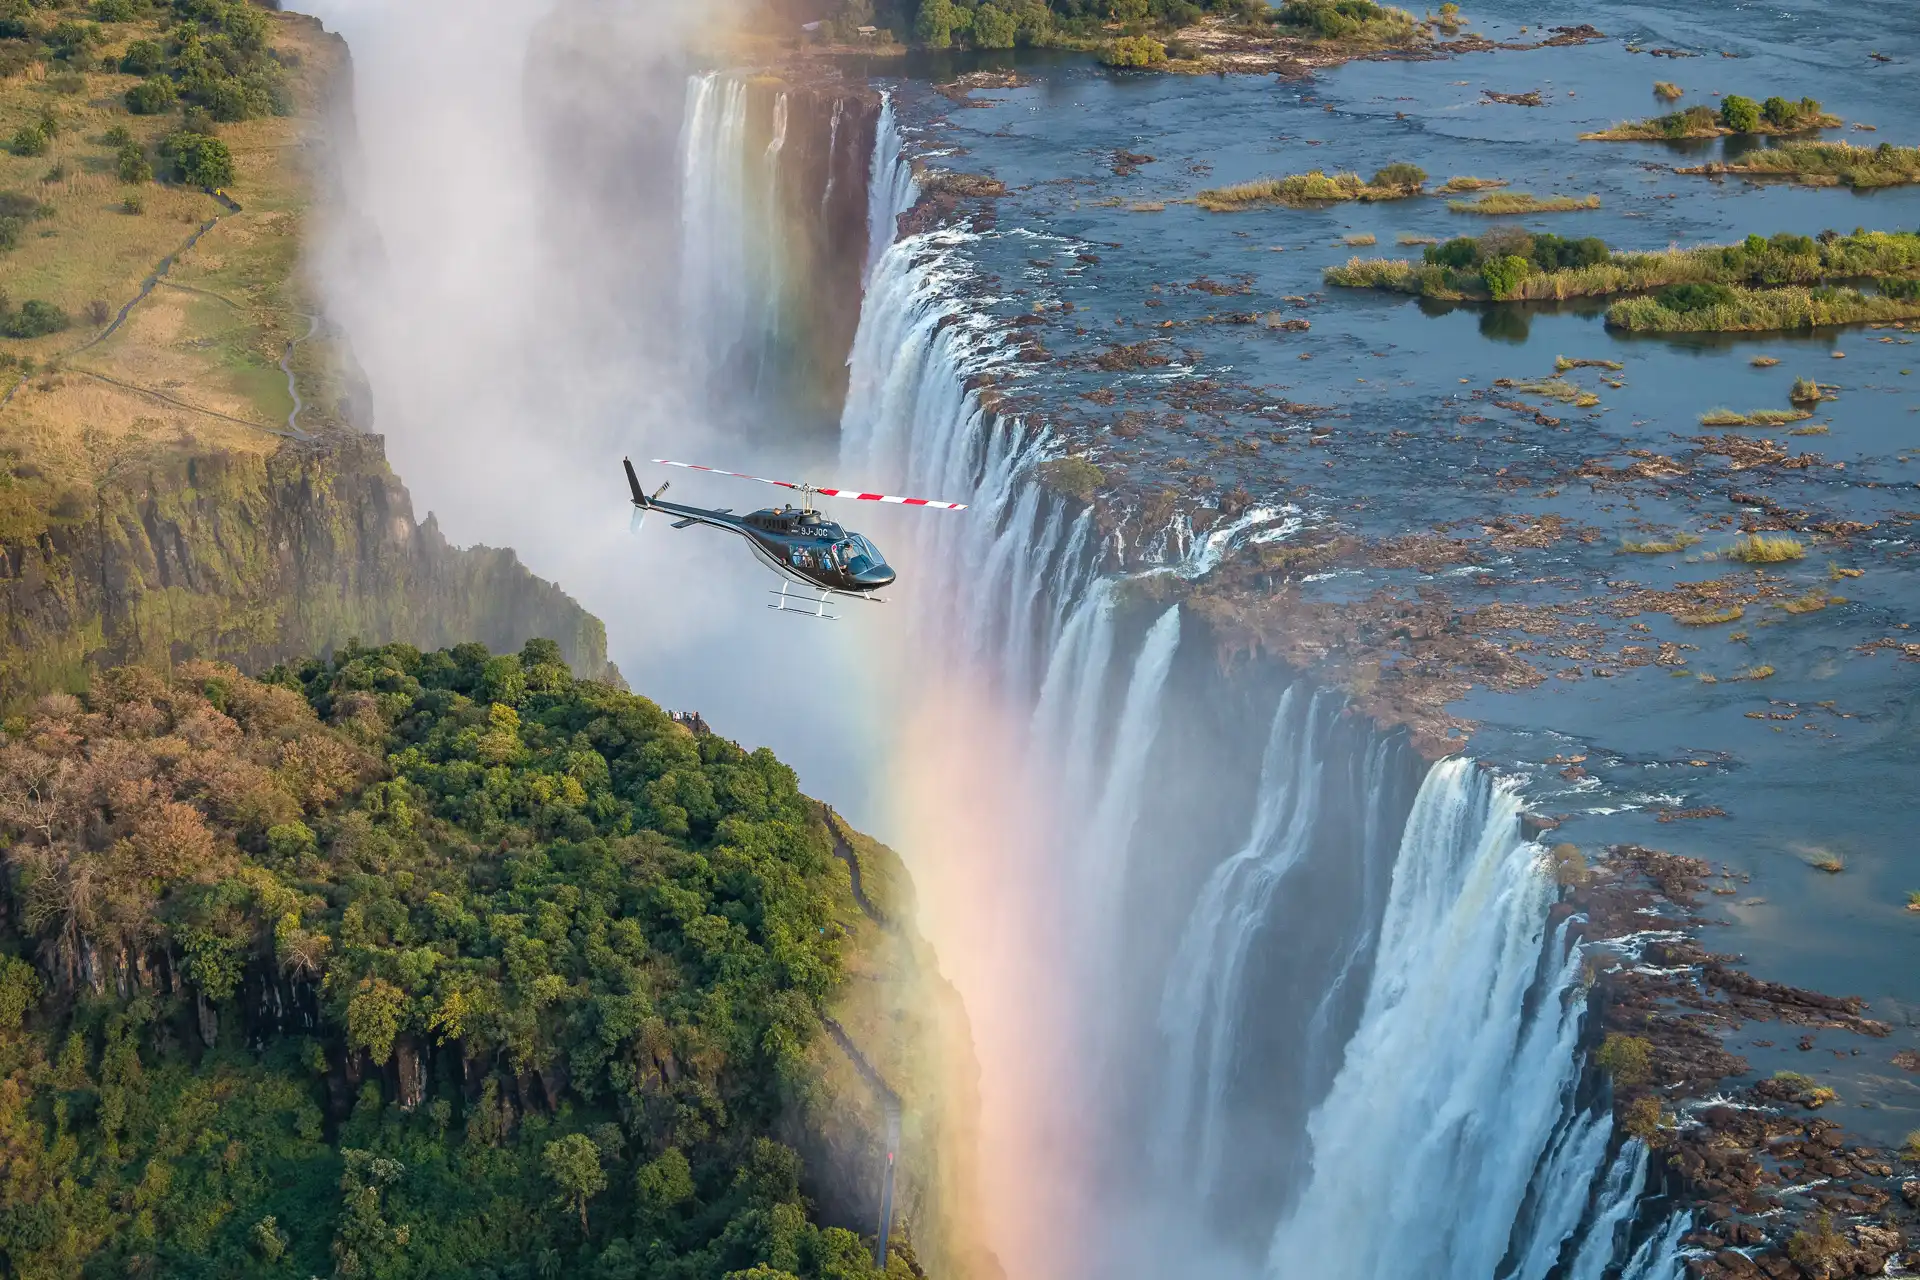 Zambia tourism